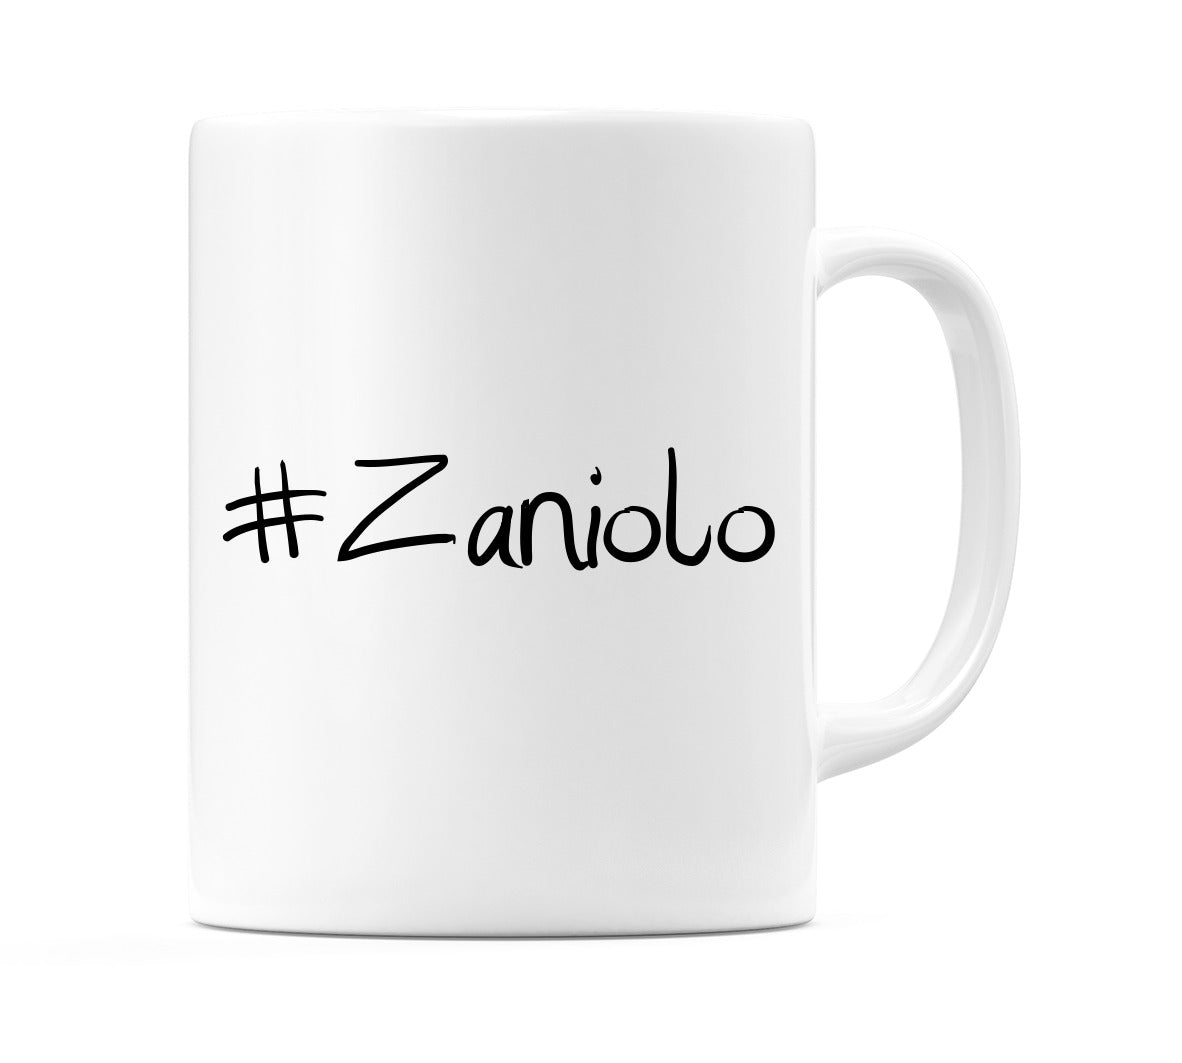 #Zaniolo Mug